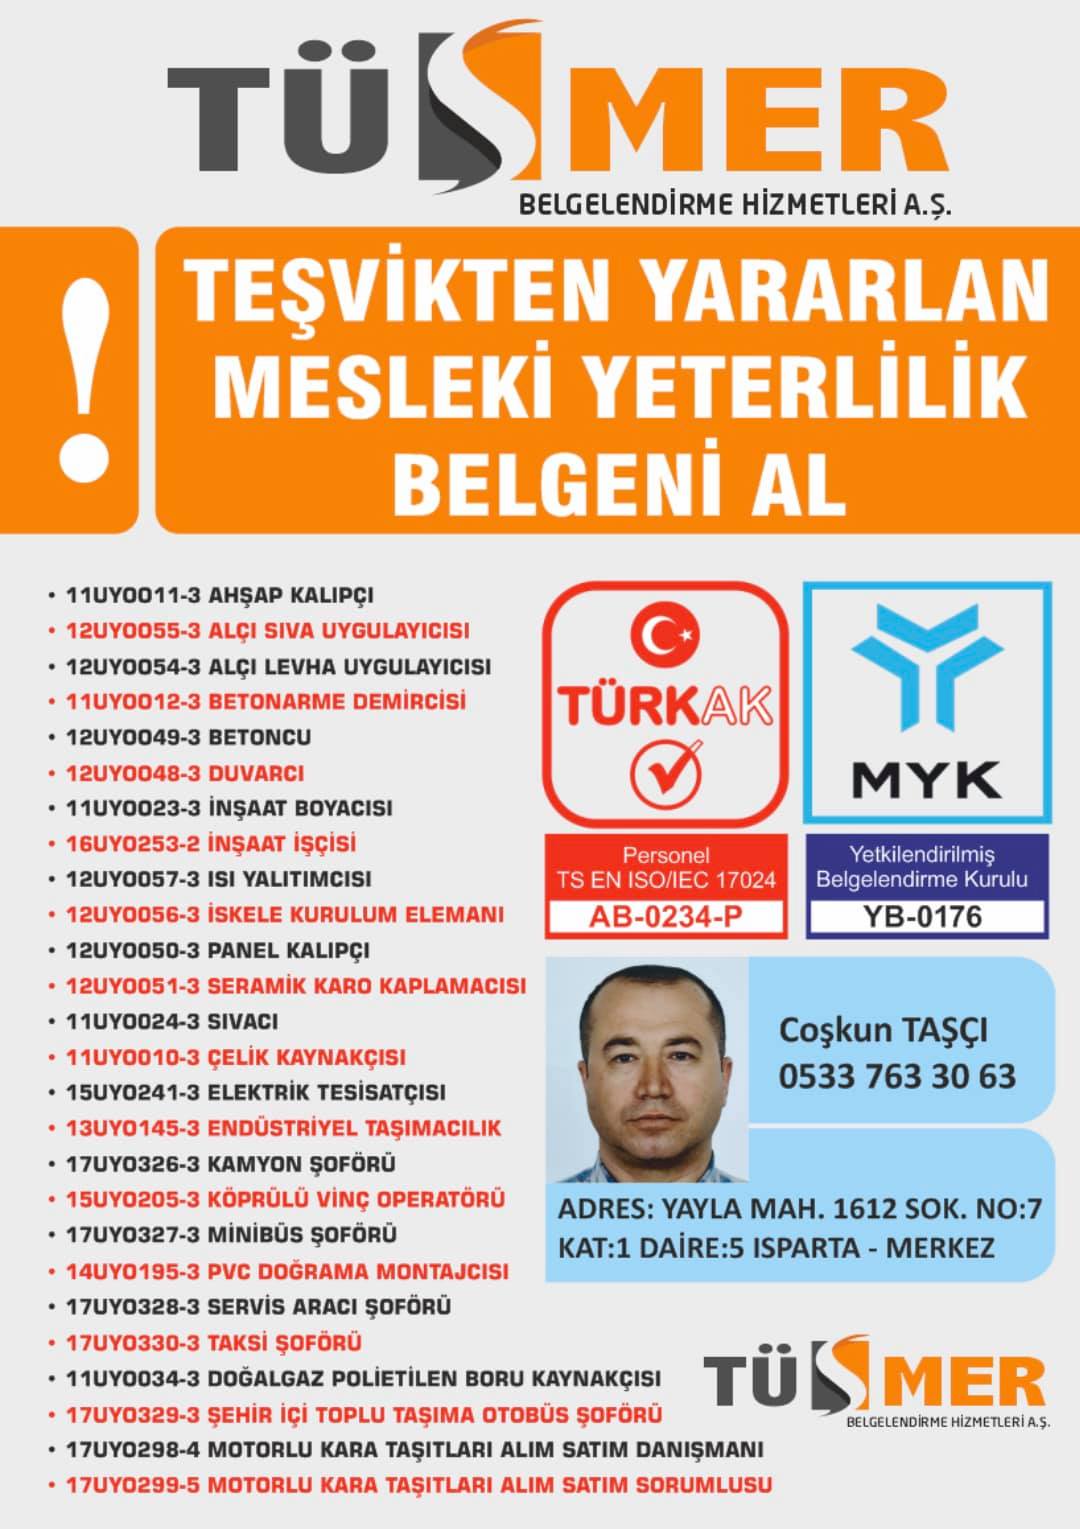 MYK MESLEKİ YETERLİLİK BELGESİ Havaalanı Esenler İstanbul